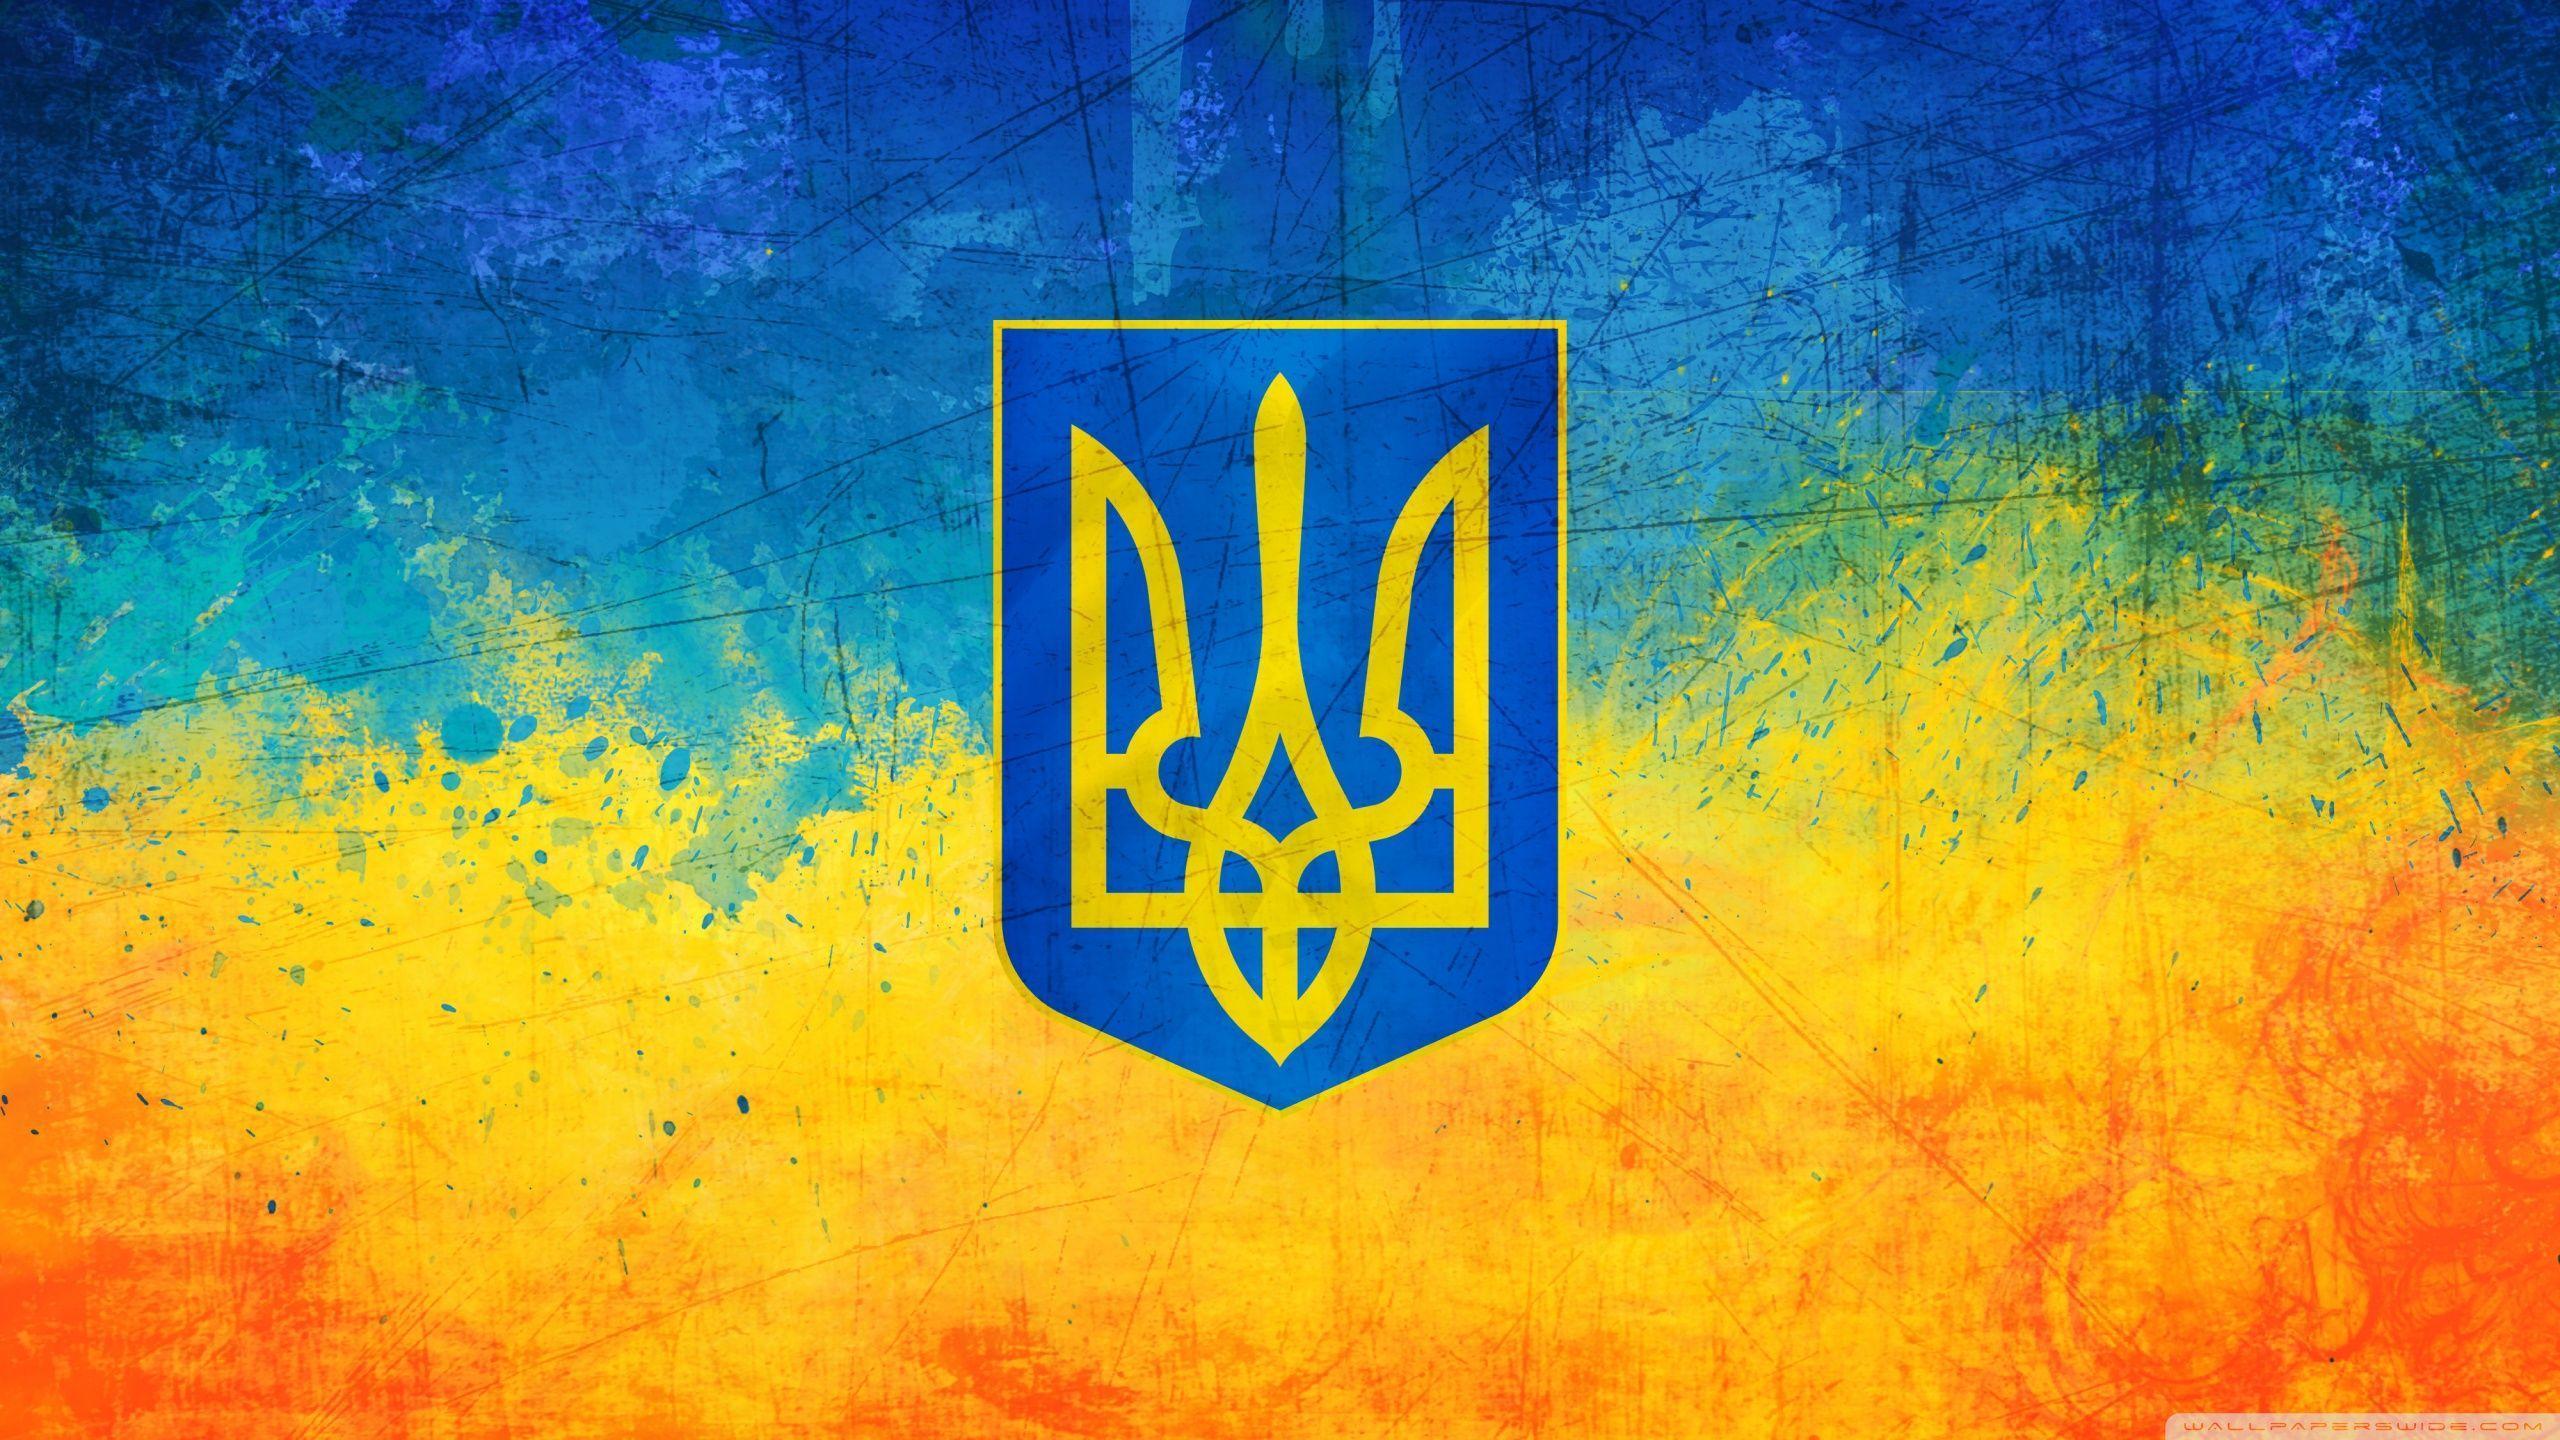 Ukrainian Flag HD desktop wallpaper, High Definition, Fullscreen